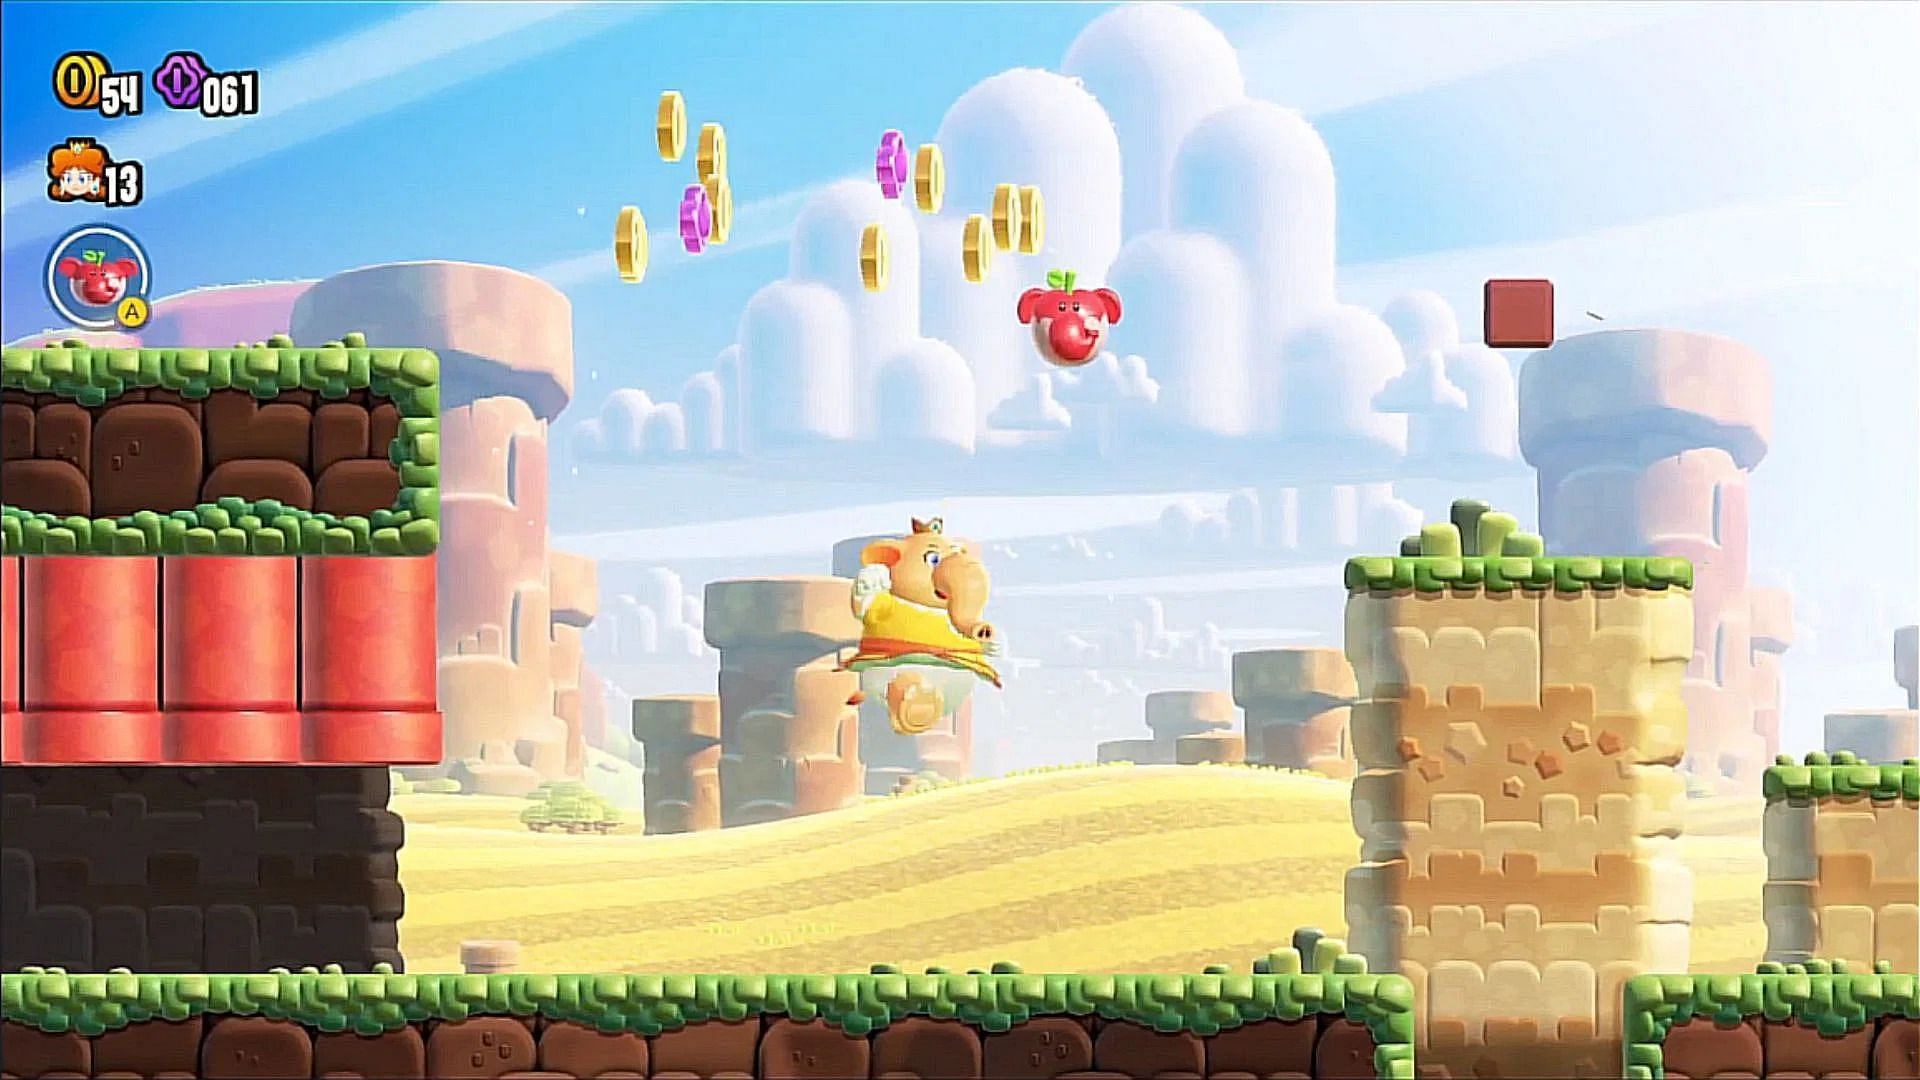 Super Mario Bros. Wonder (Image via Nintendo)